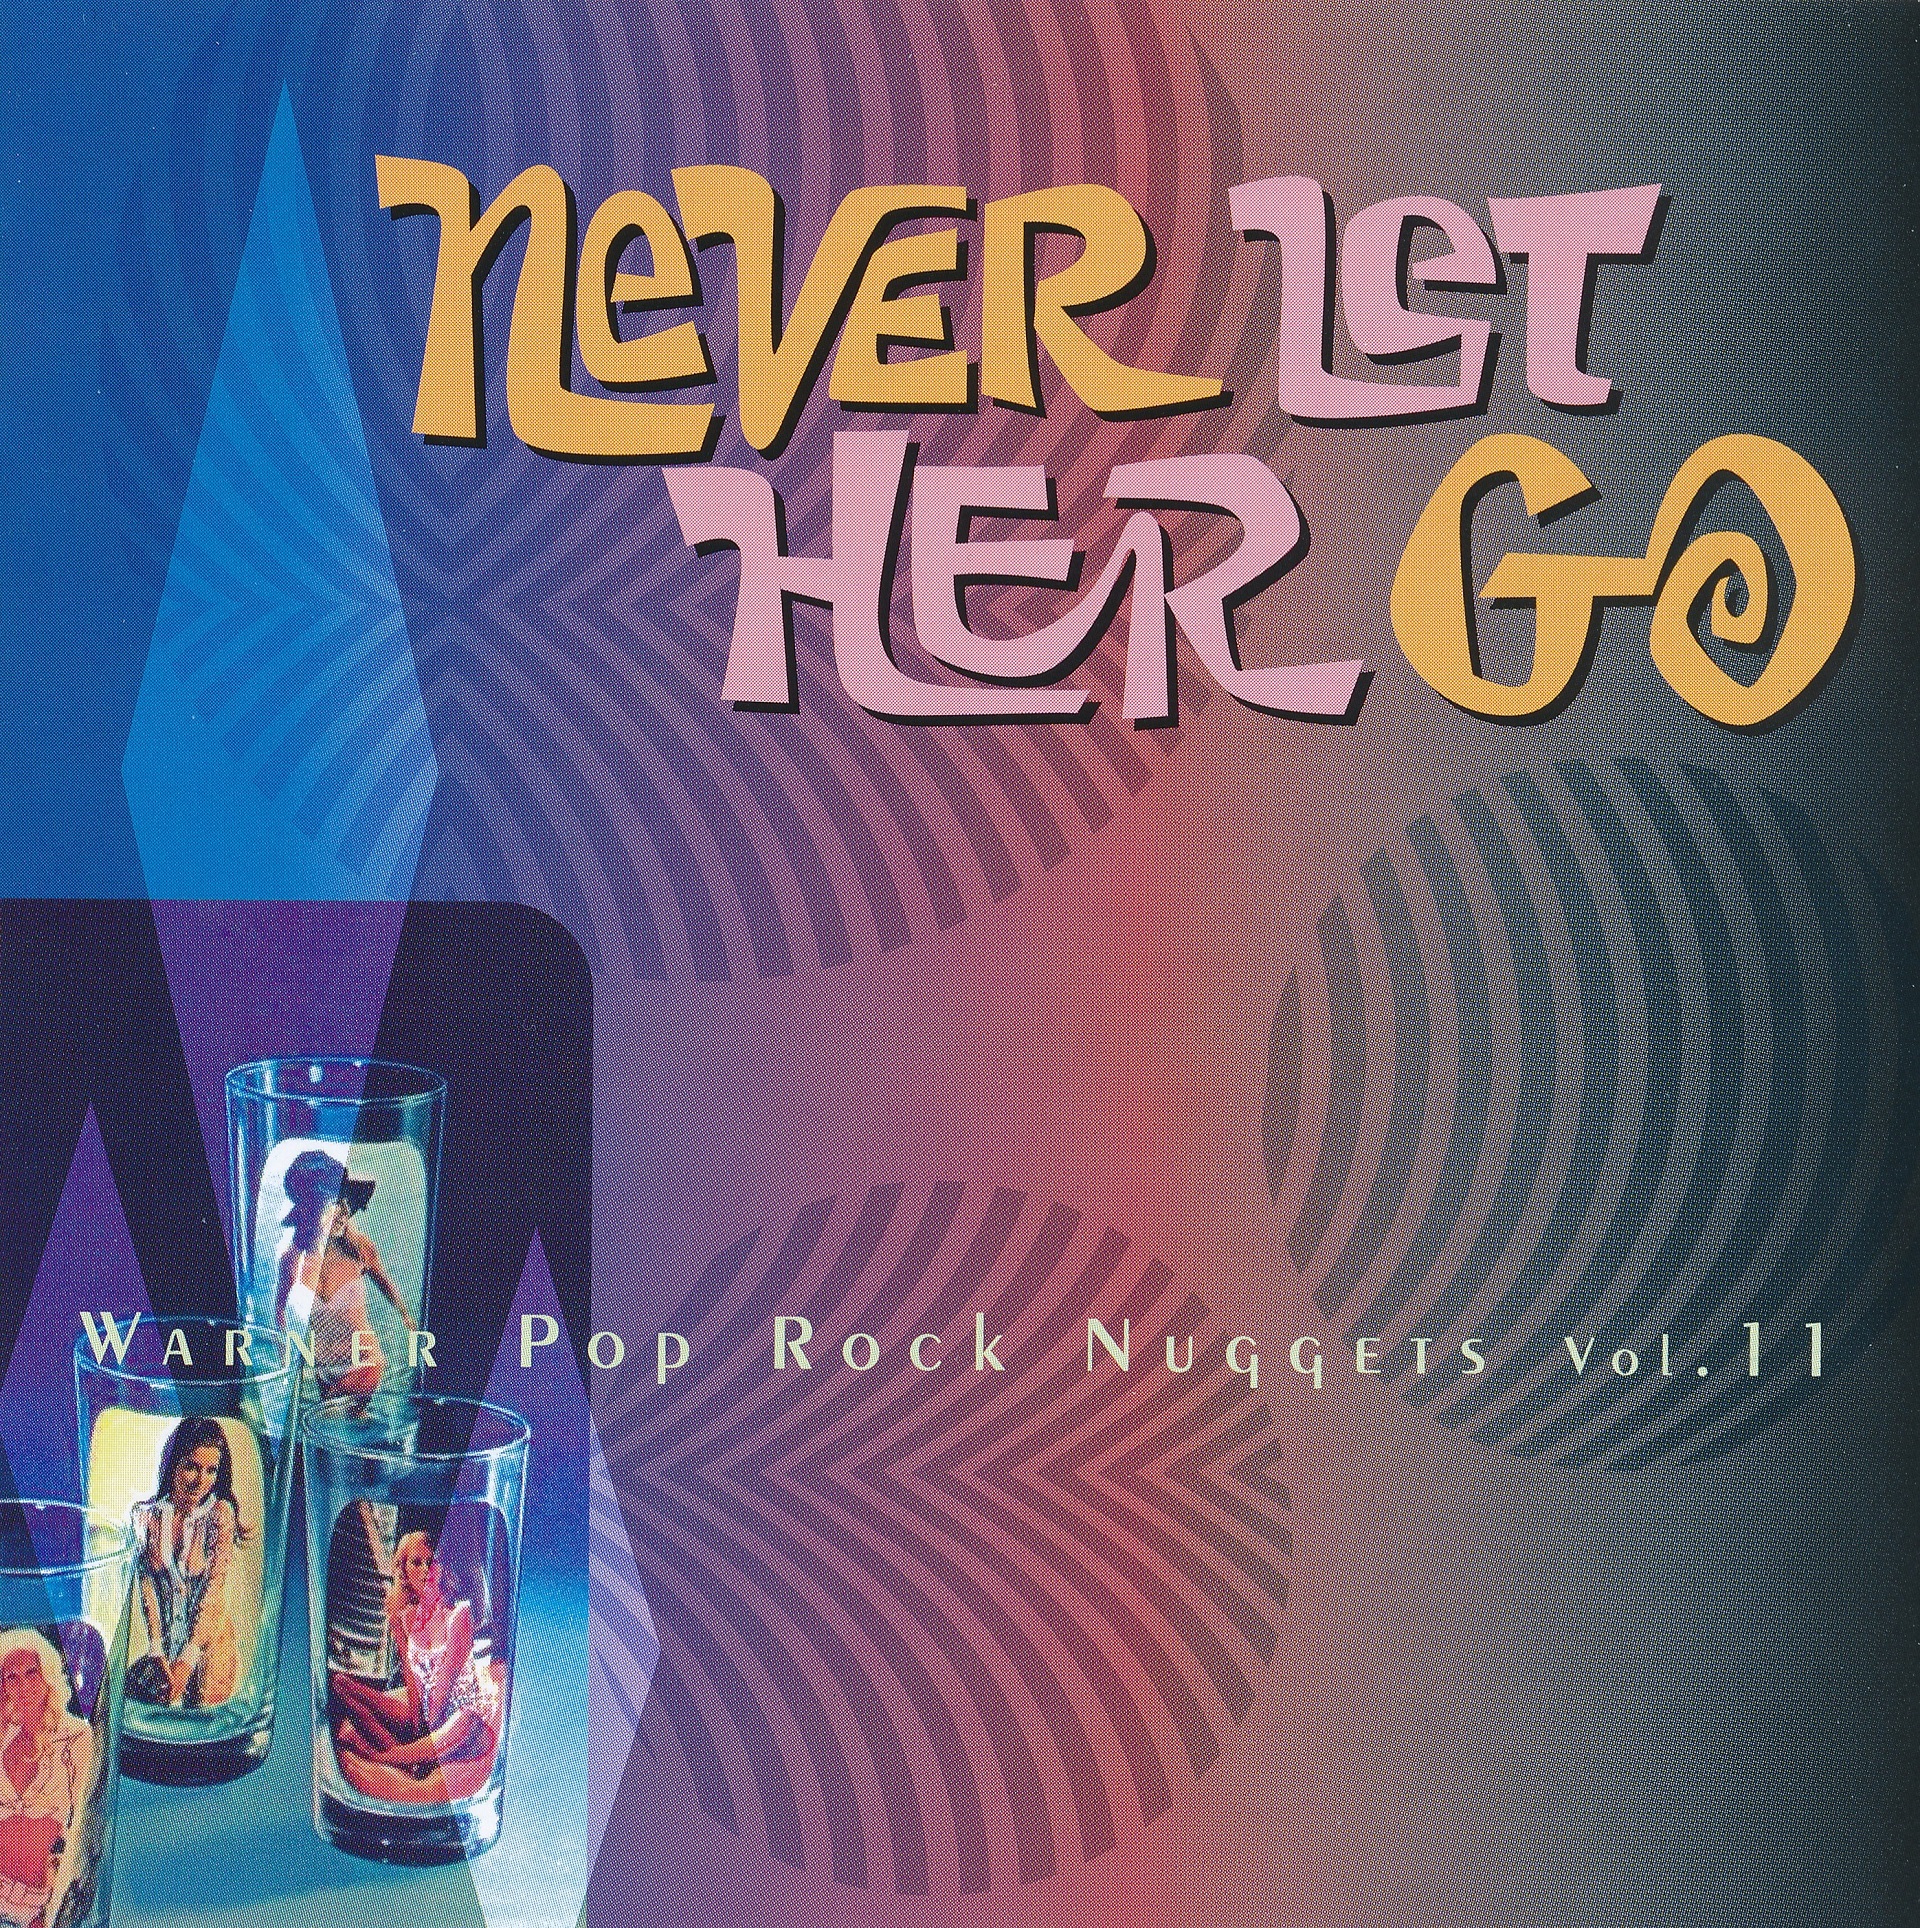 Warner Pop Rock Nuggets Volume 11 Never Let Her Go